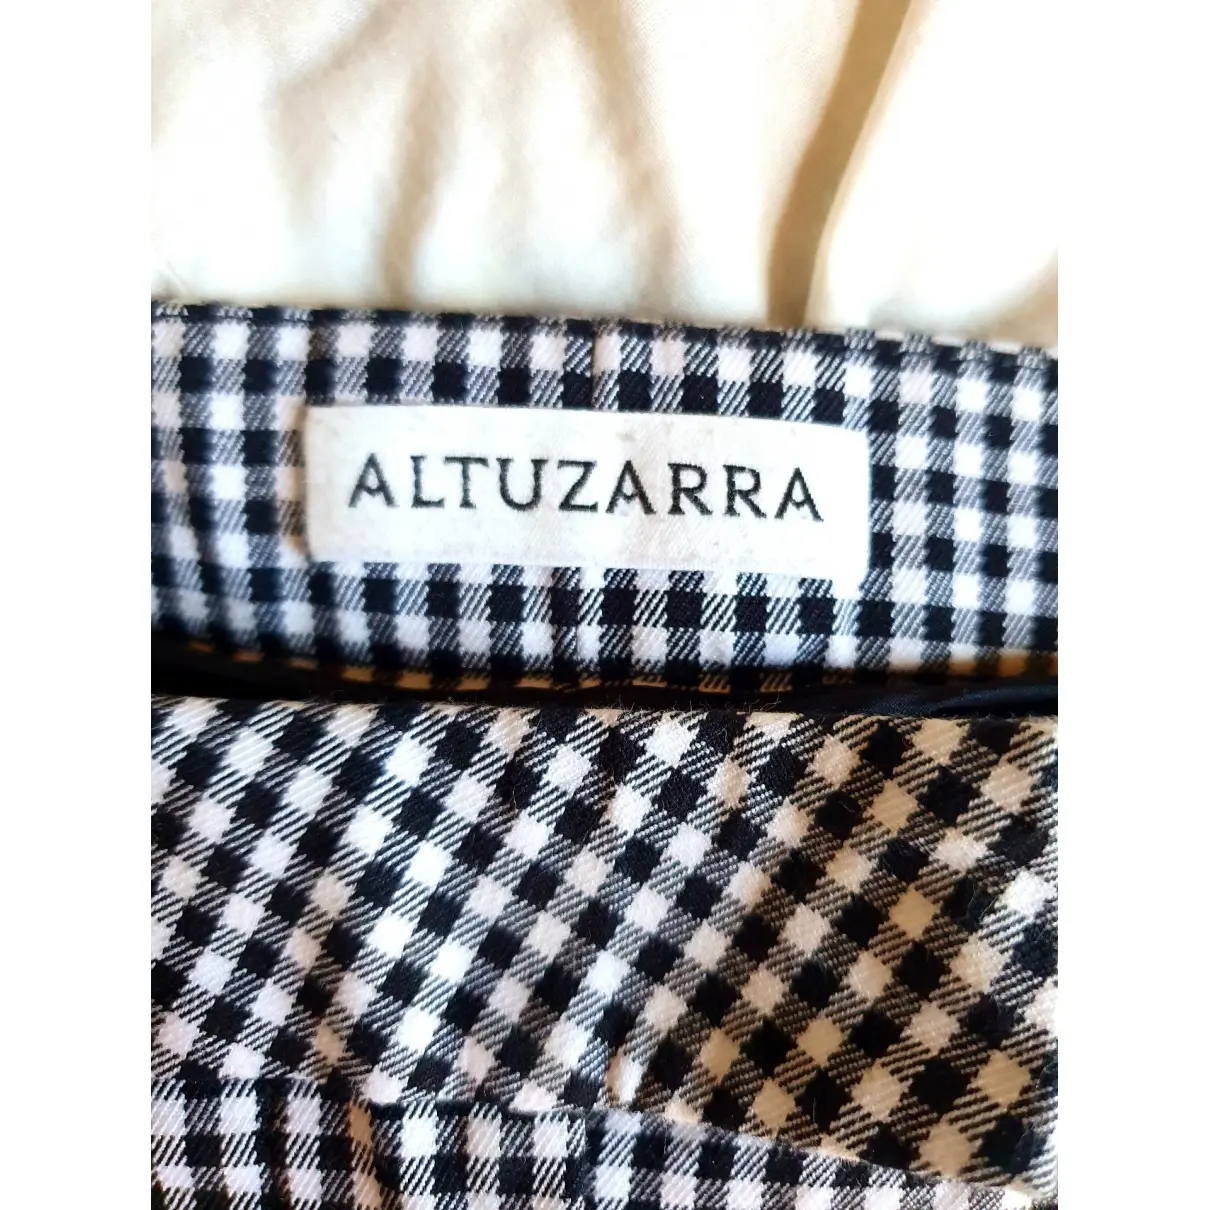 Buy Altuzarra Slim pants online